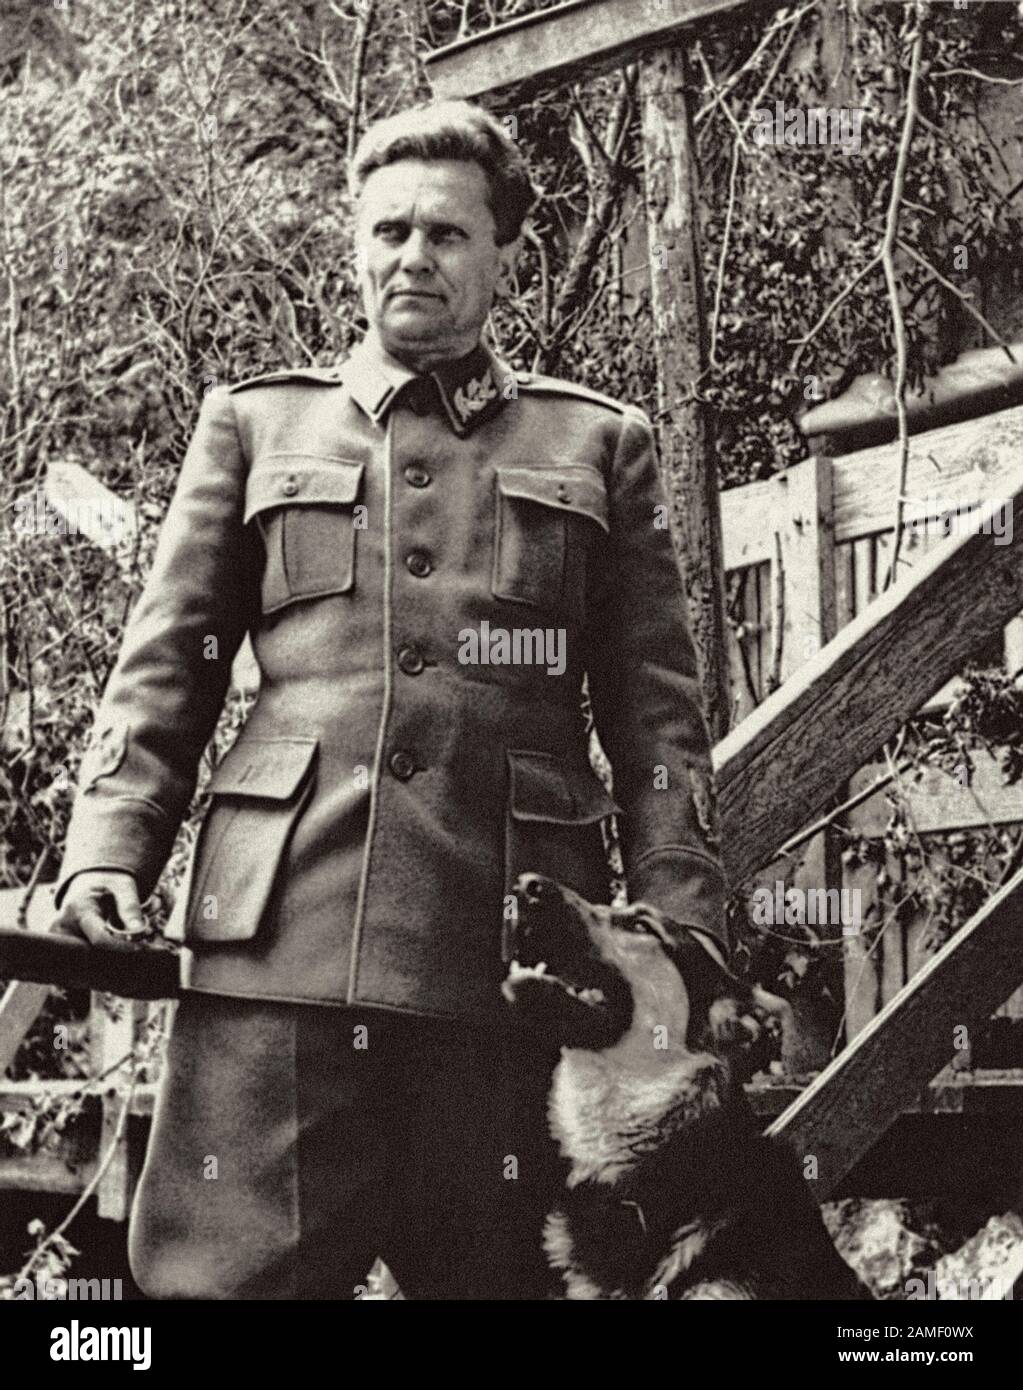 Il maresciallo Josip Broz Tito, il capo delle forze armate faziose unite contro gli invasori nazisti e i loro alleati, si pone con il suo cane. Foto Stock